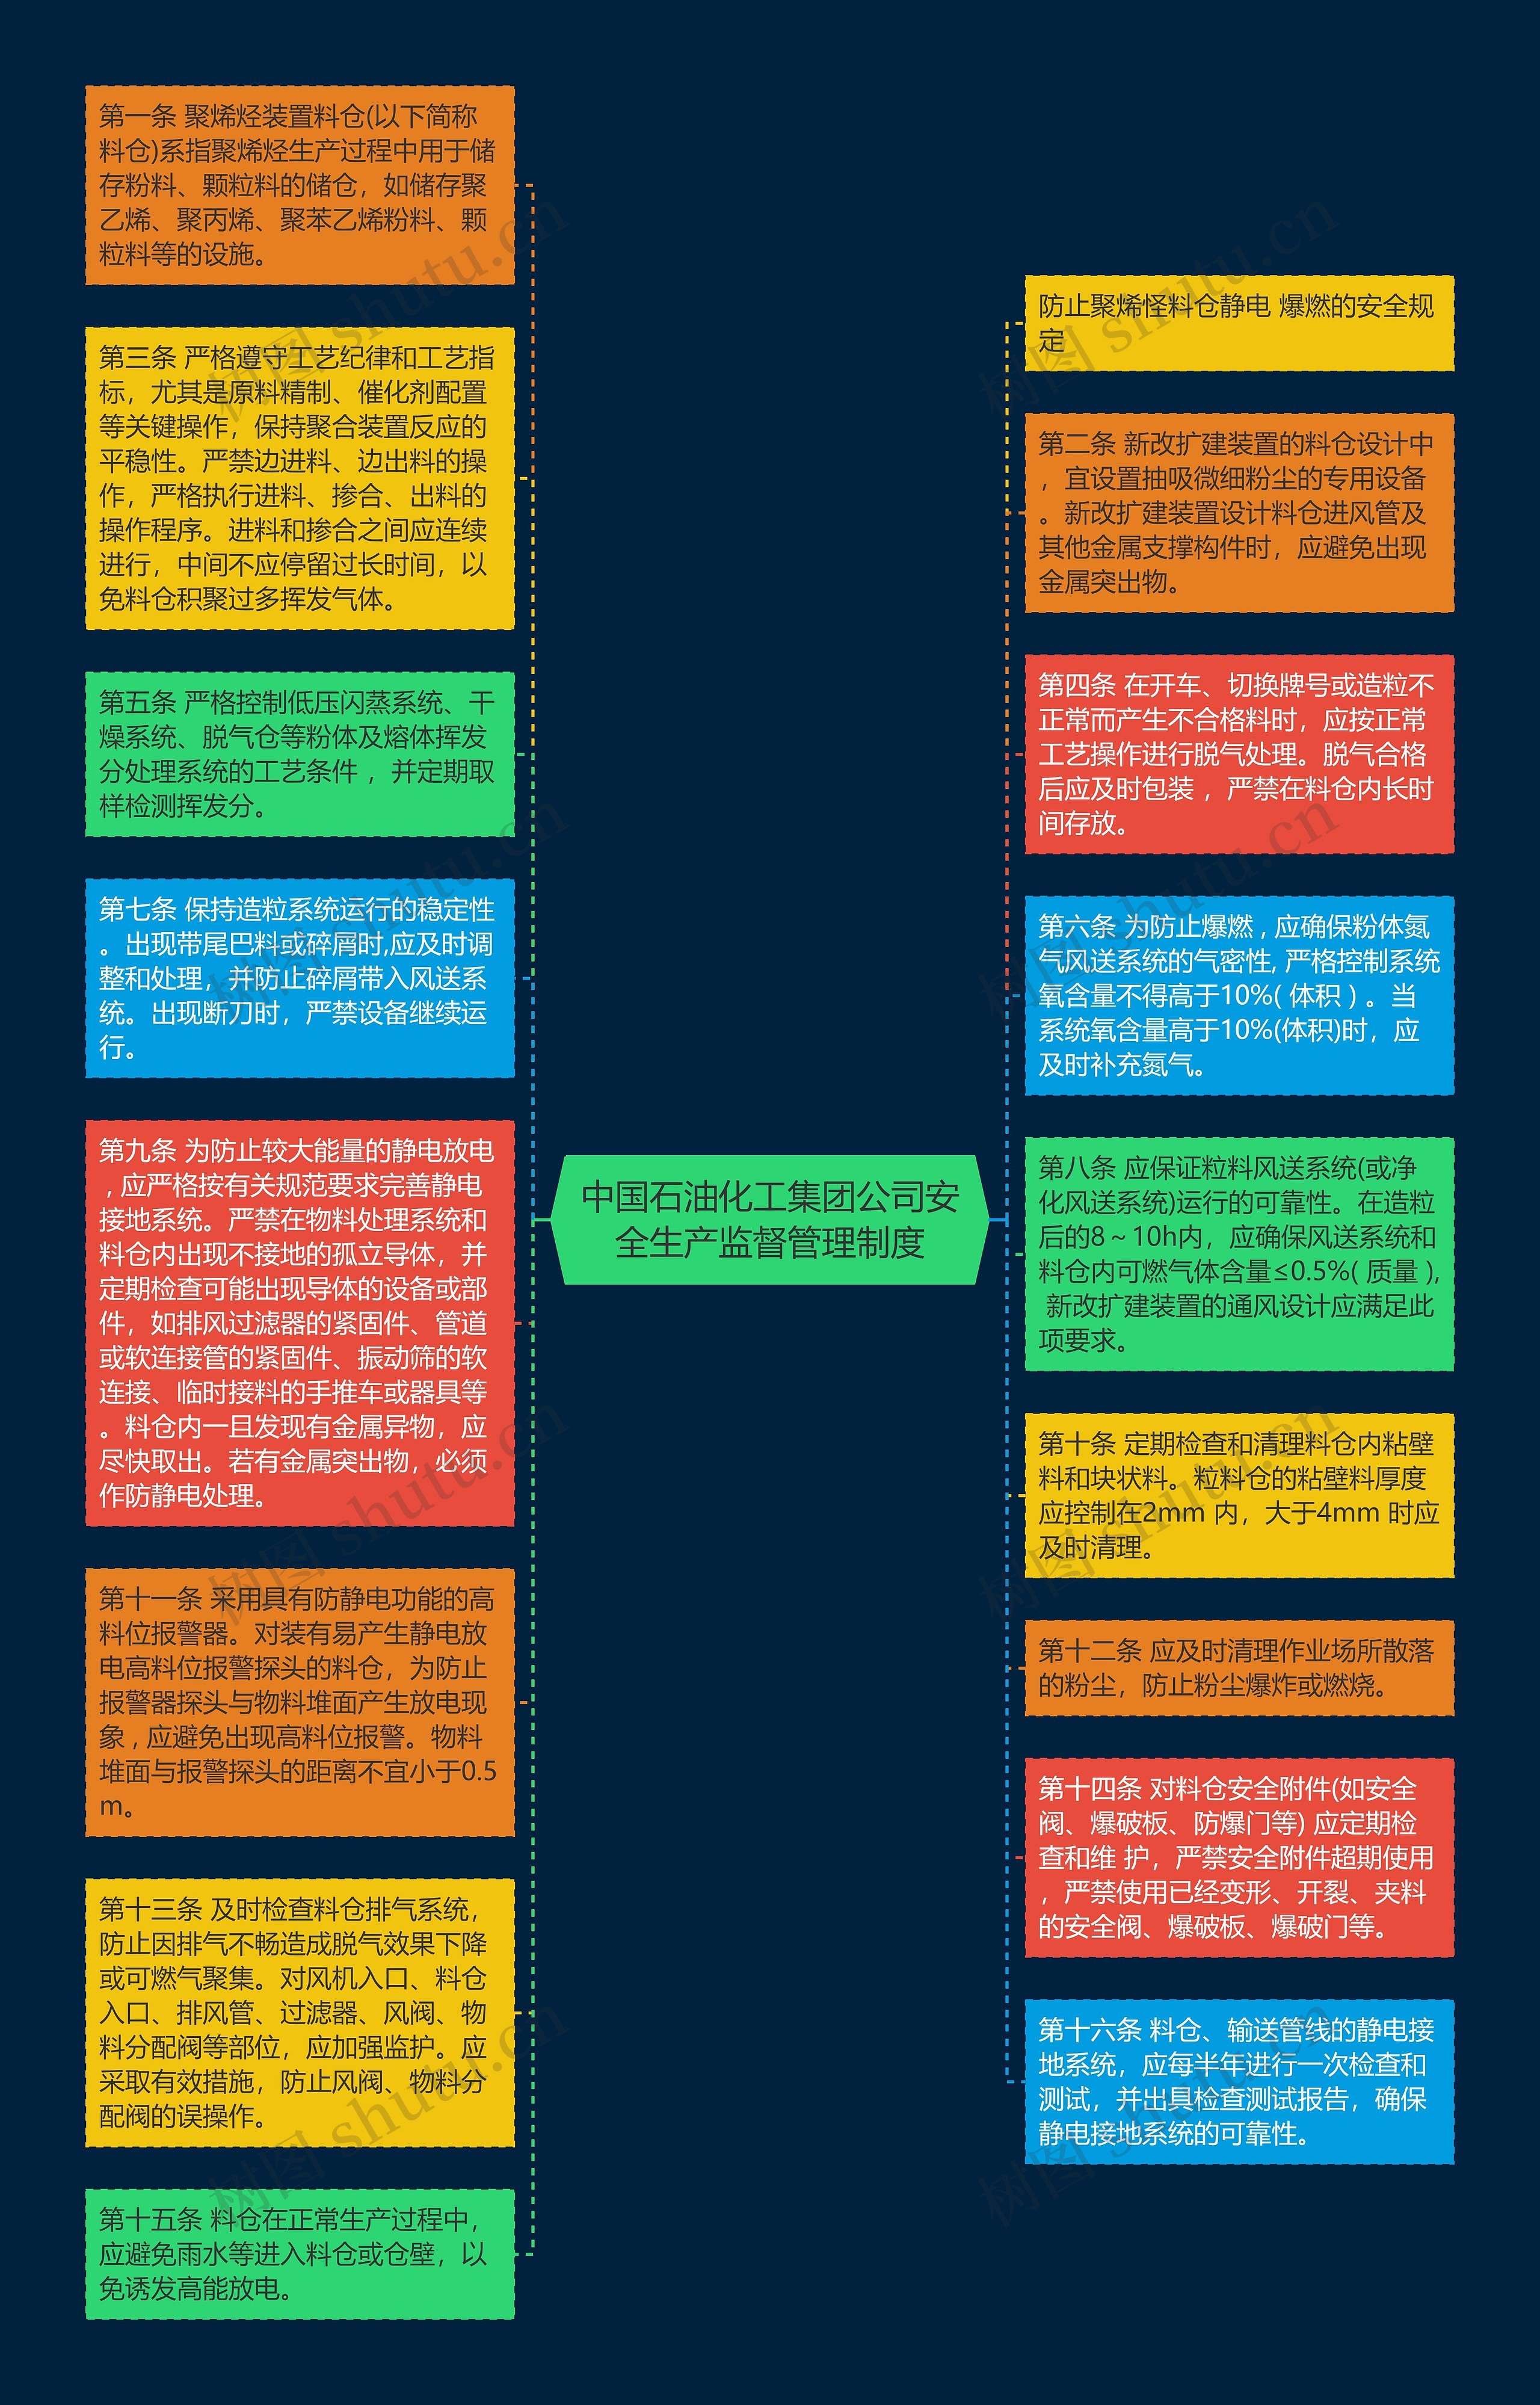 中国石油化工集团公司安全生产监督管理制度思维导图